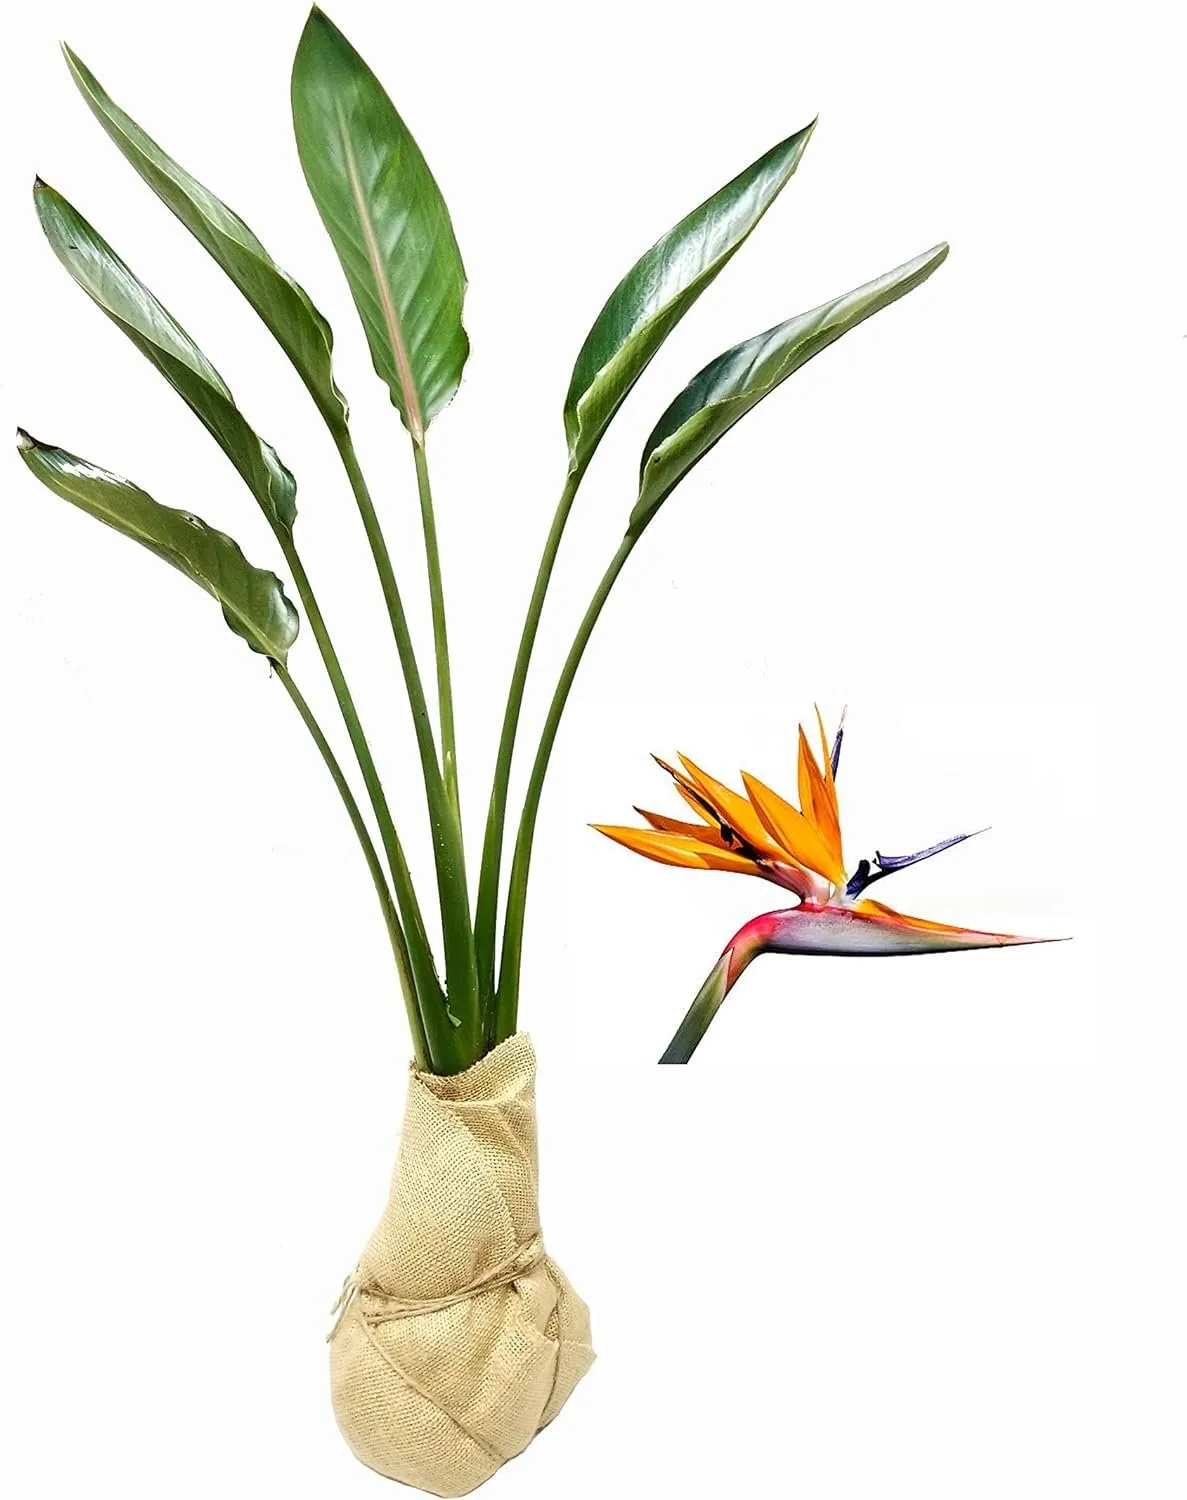 Orange Bird of Paradise Strelitzia Reginae Large Live Plant Tropical - $81.59